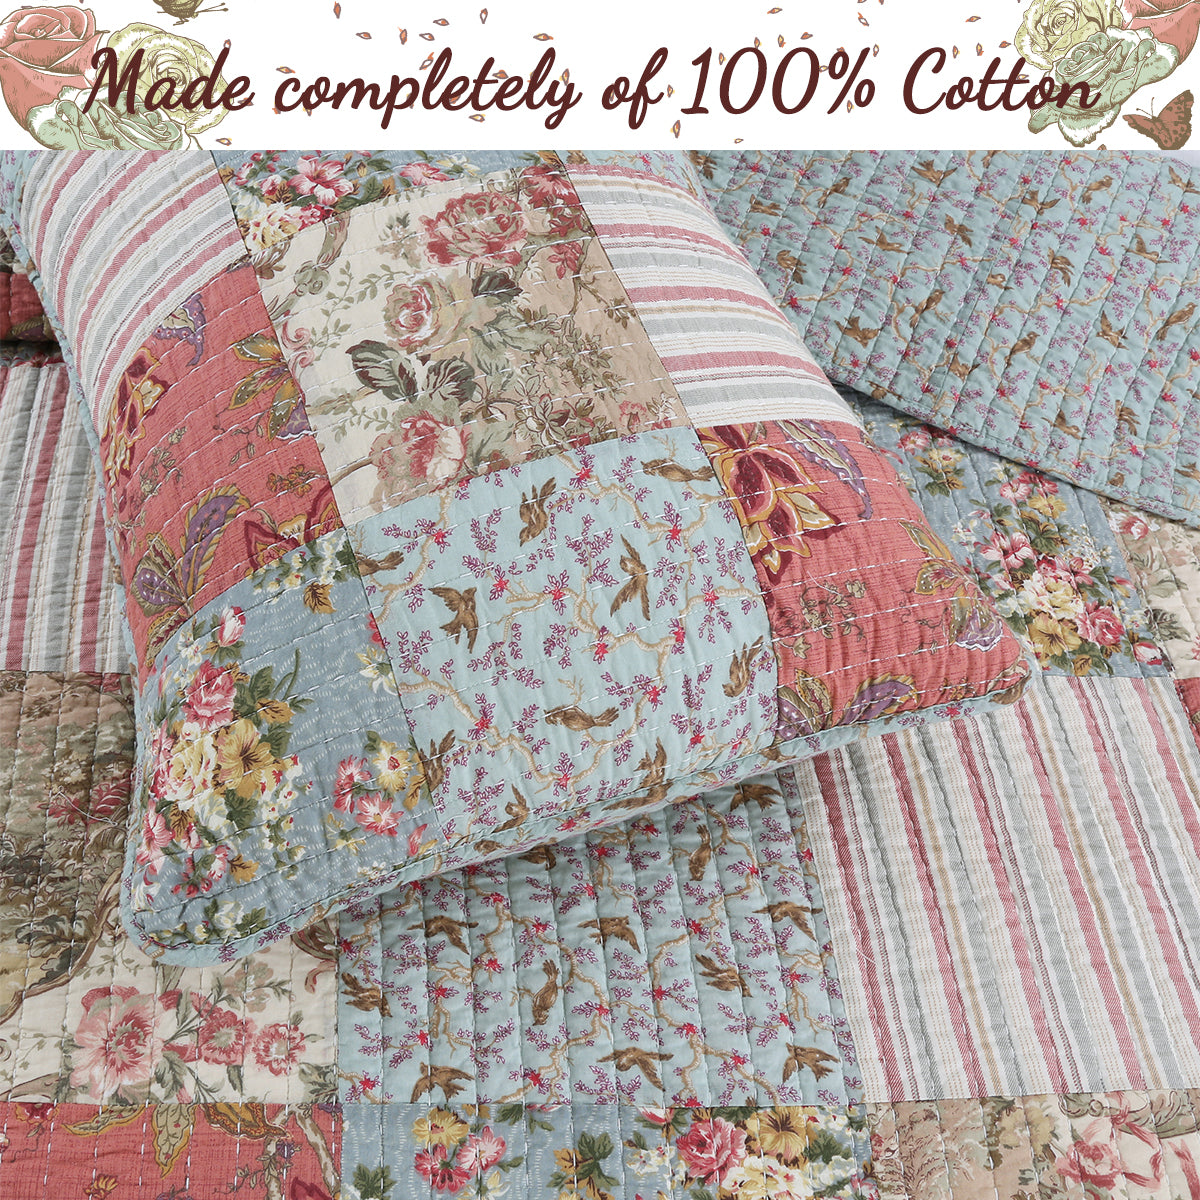 Eleanor Real Patchwork Floral Stripe 3-Piece Cotton Reversible Quilt Bedding Set